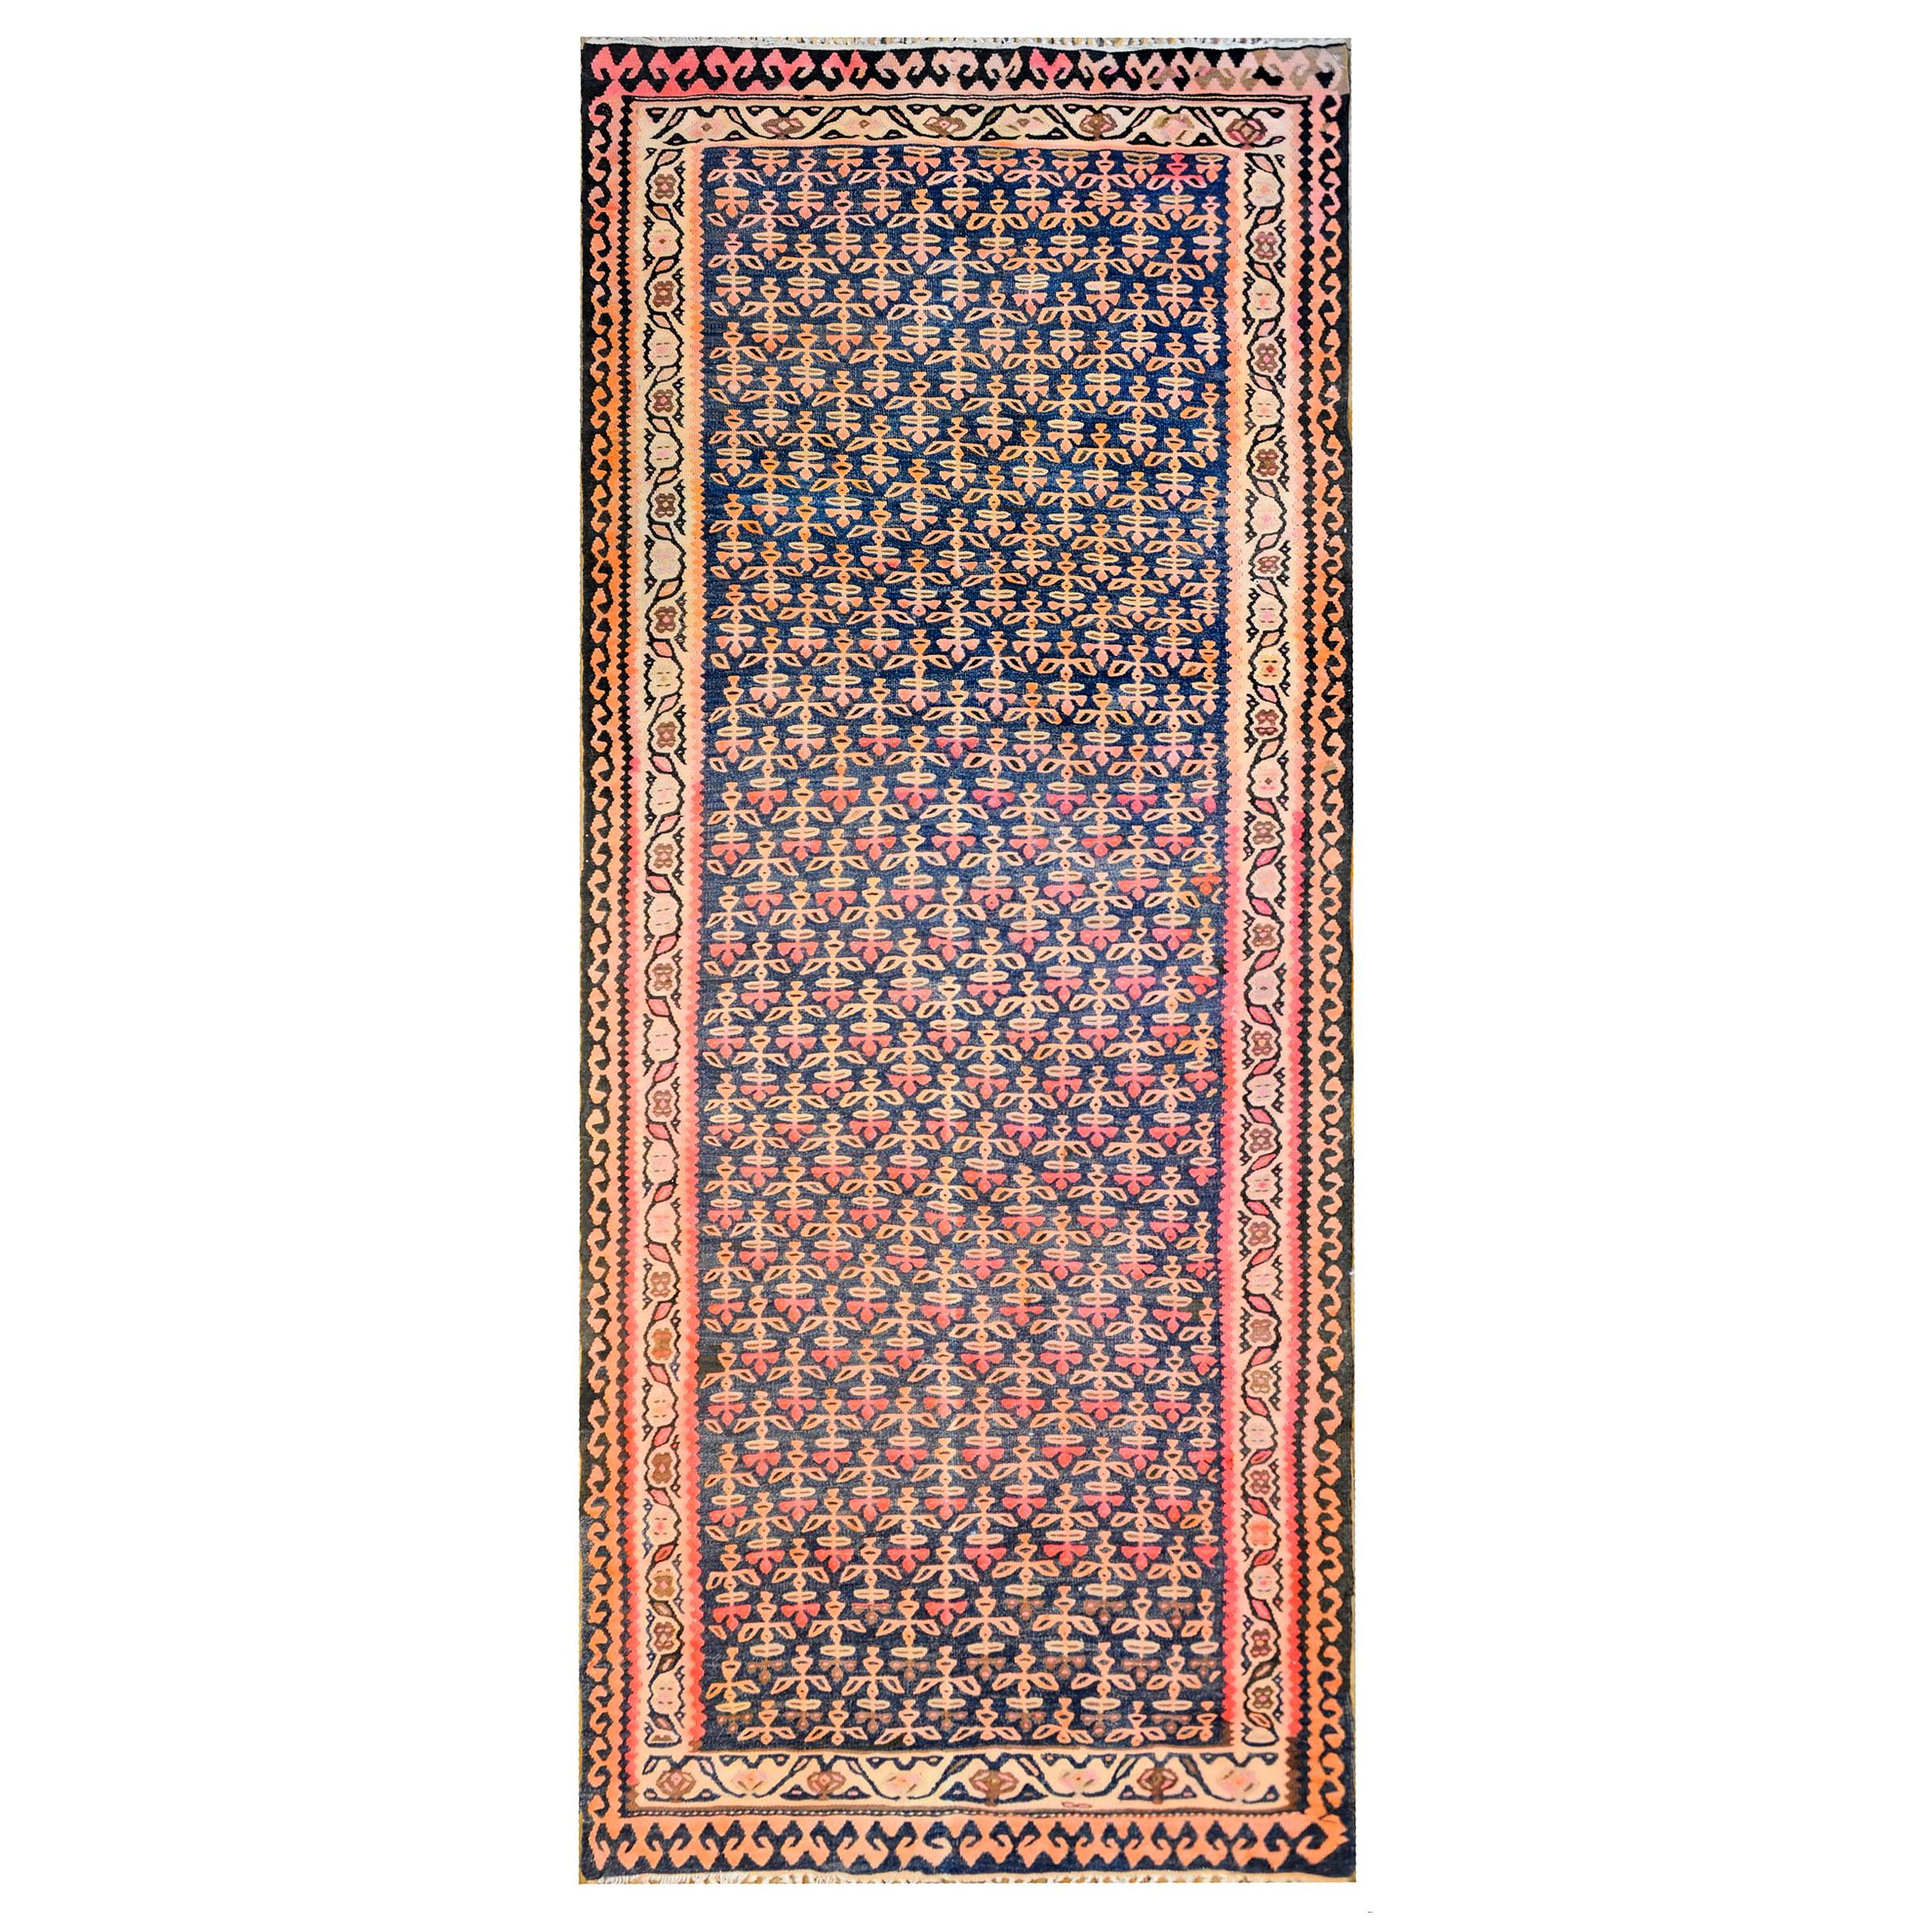 Wunderschöner kurdischer Kelim-Teppich aus dem frühen 20. Jahrhundert